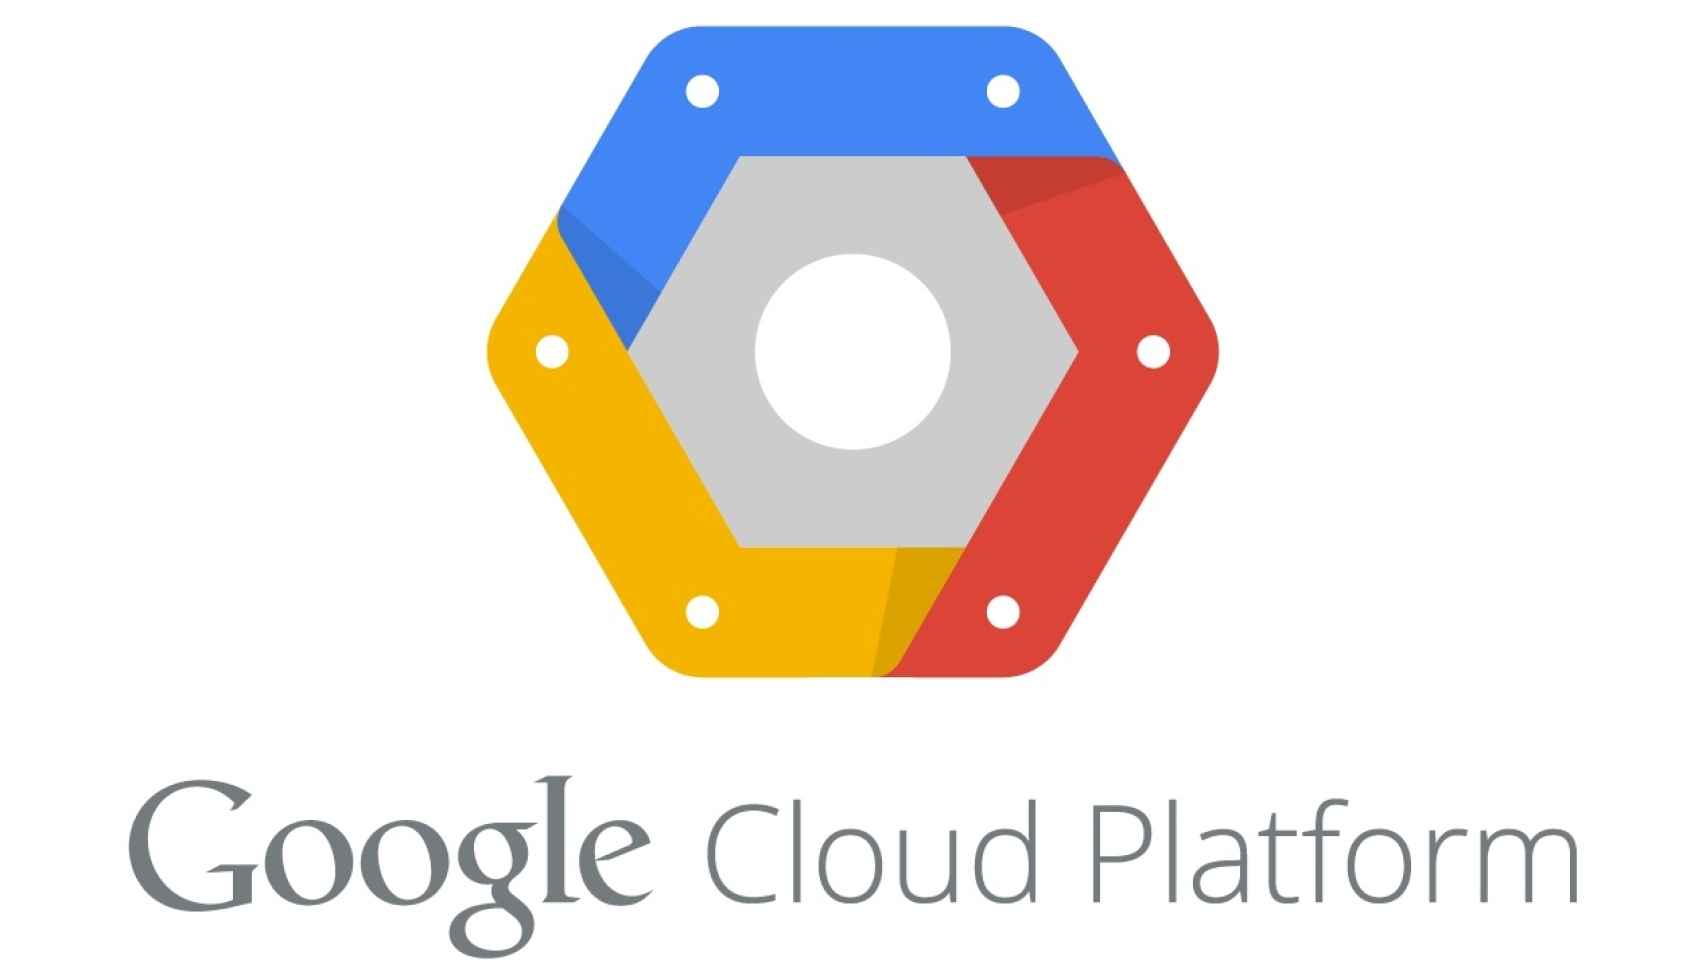 Google reorganiza sus servicios en la nube bajo el liderazgo de la experta Diane Greene, fundadora de VMWare